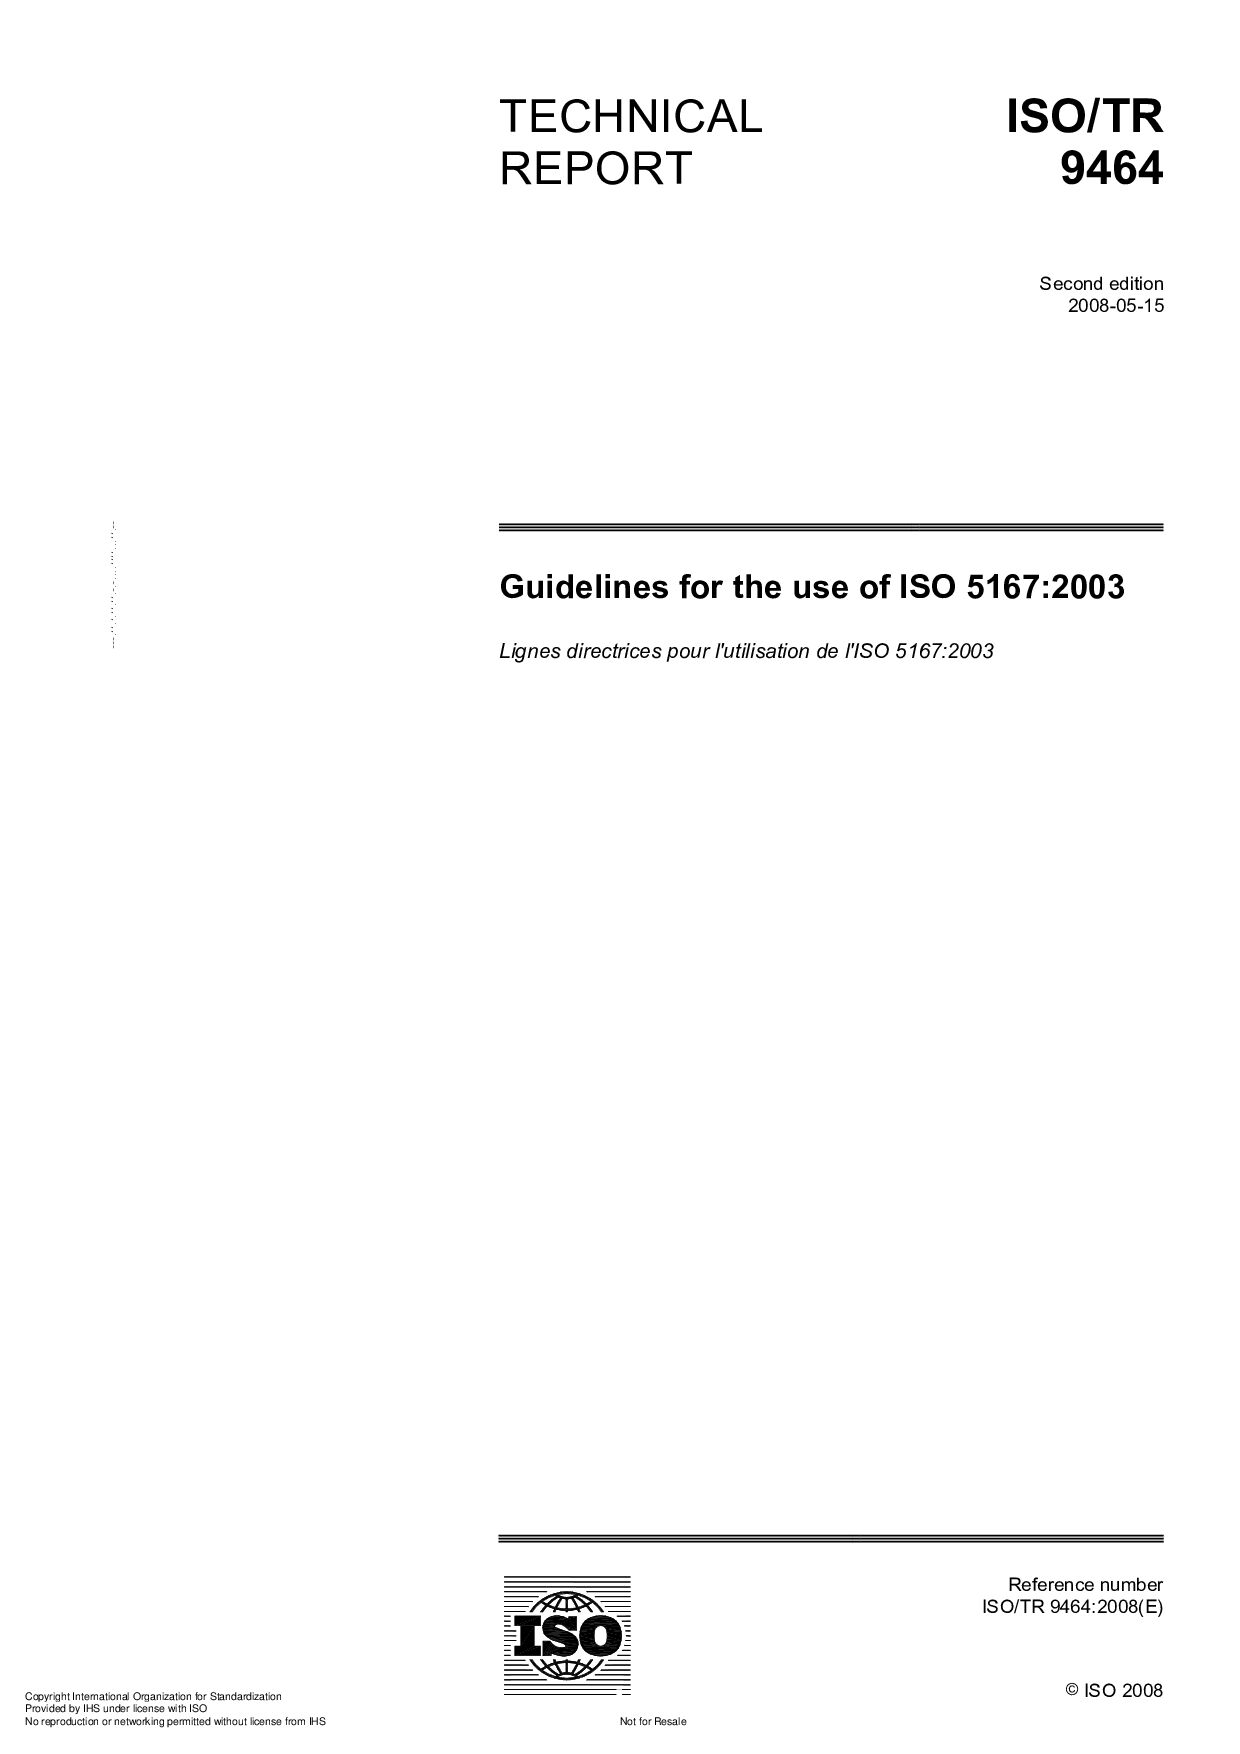 ISO/TR 9464:2008封面图